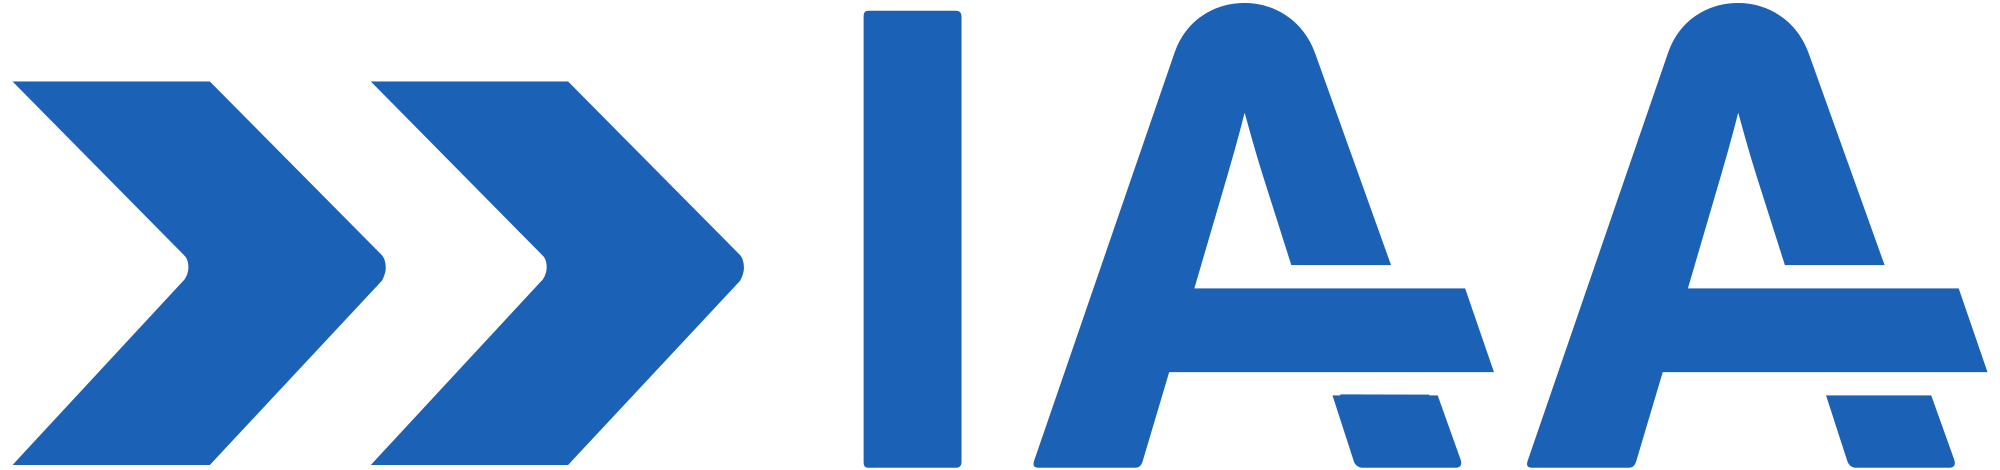 IAA Logo - Logo IAA.svg